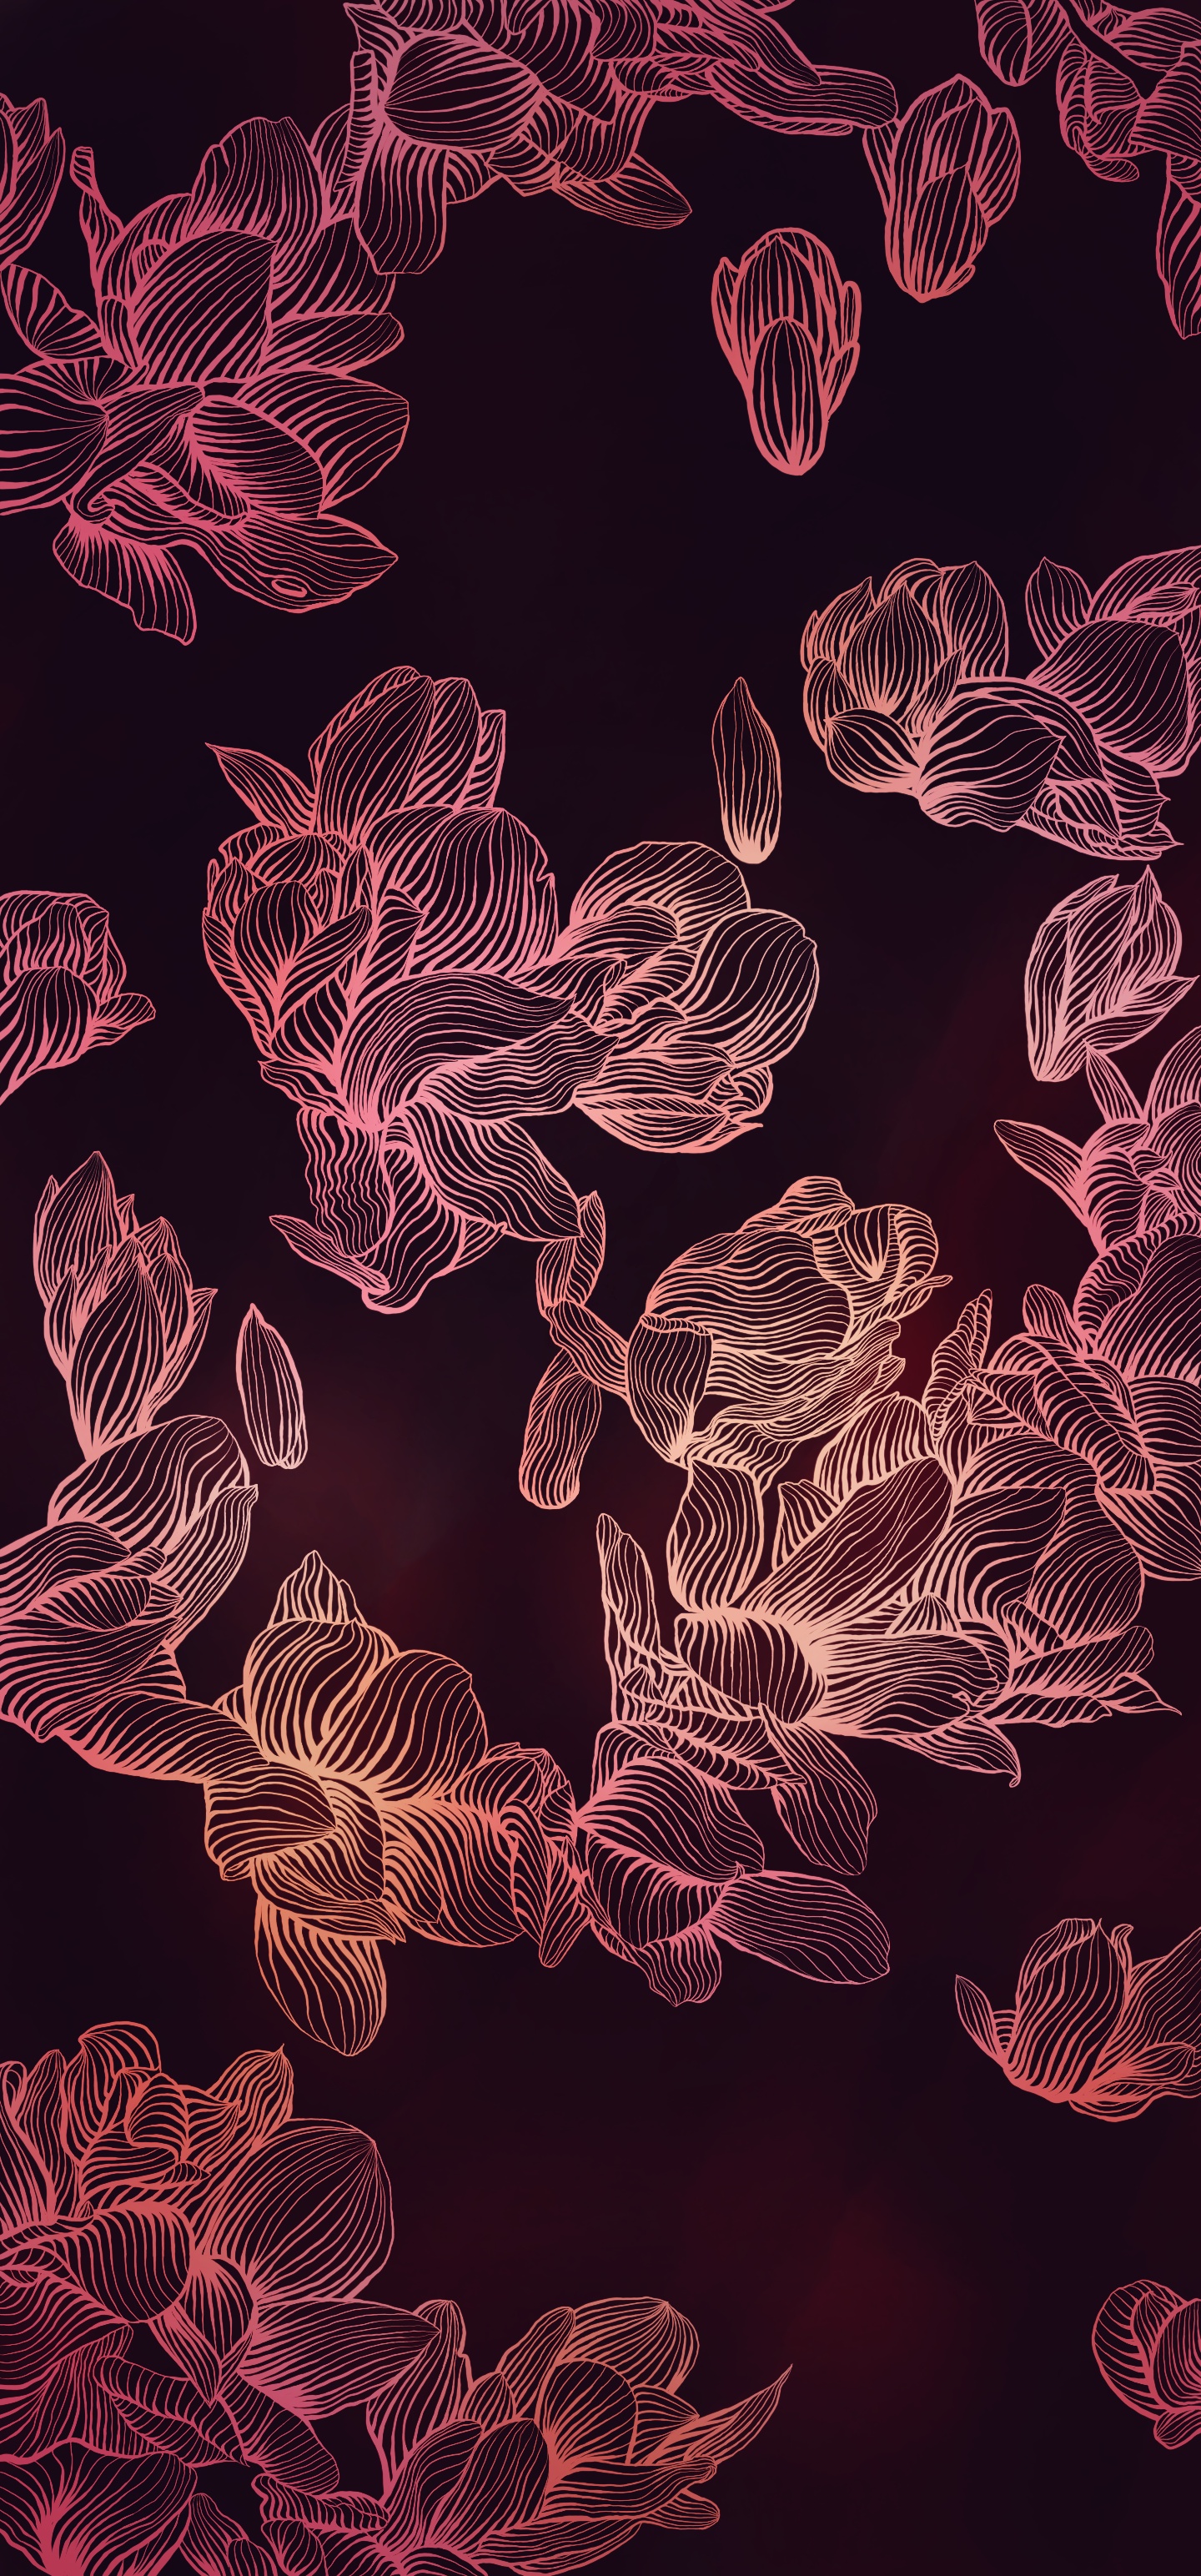 Digital Art Flowers Red Dark Portrait Display Leaves Simple Background Minimalism 1440x3088